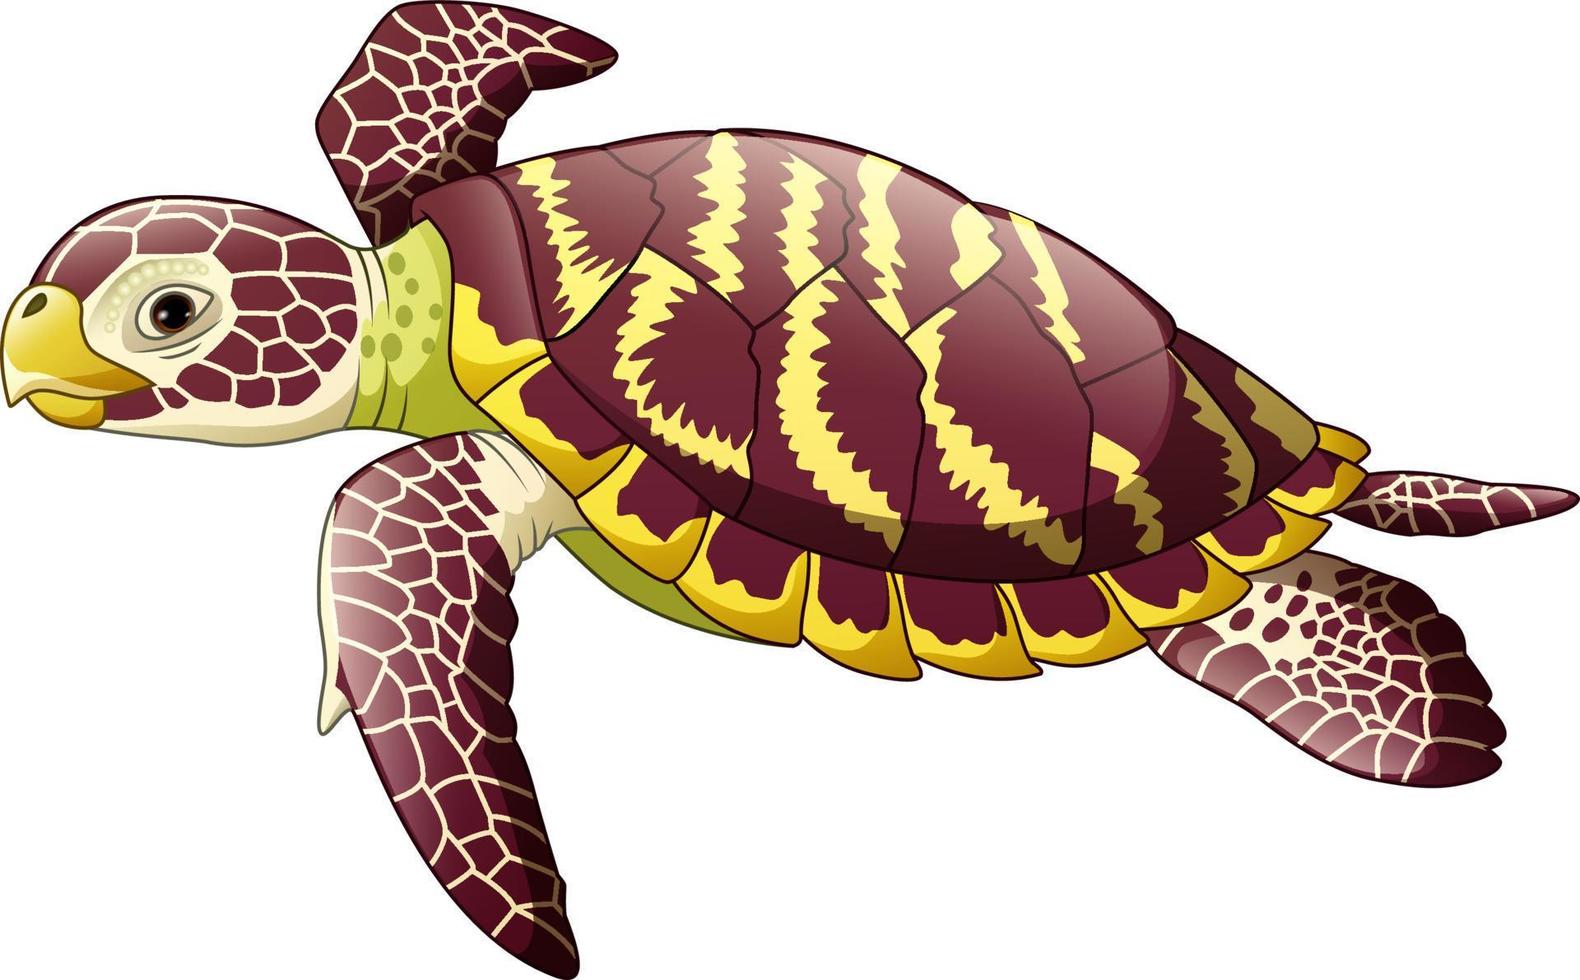 tecknad havssköldpadda isolerad på vit bakgrund vektor